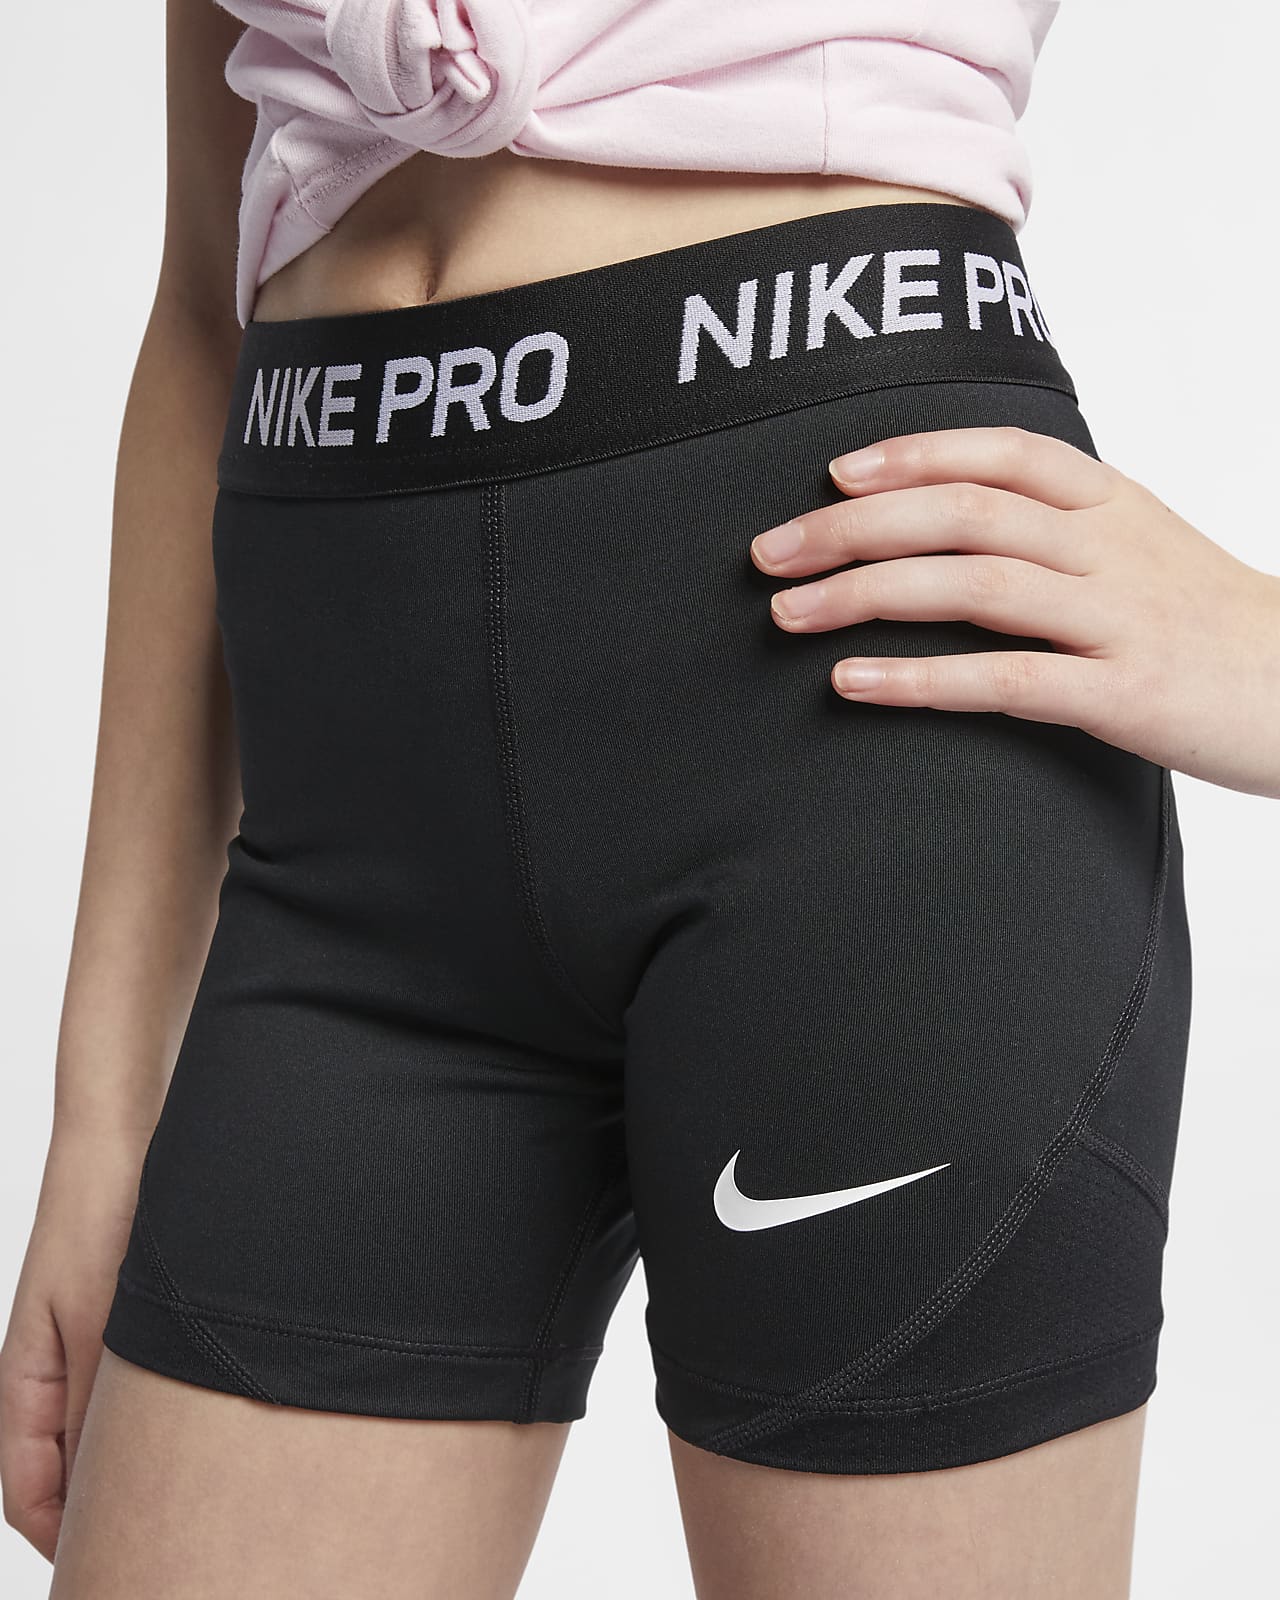 nike pro shorts old style